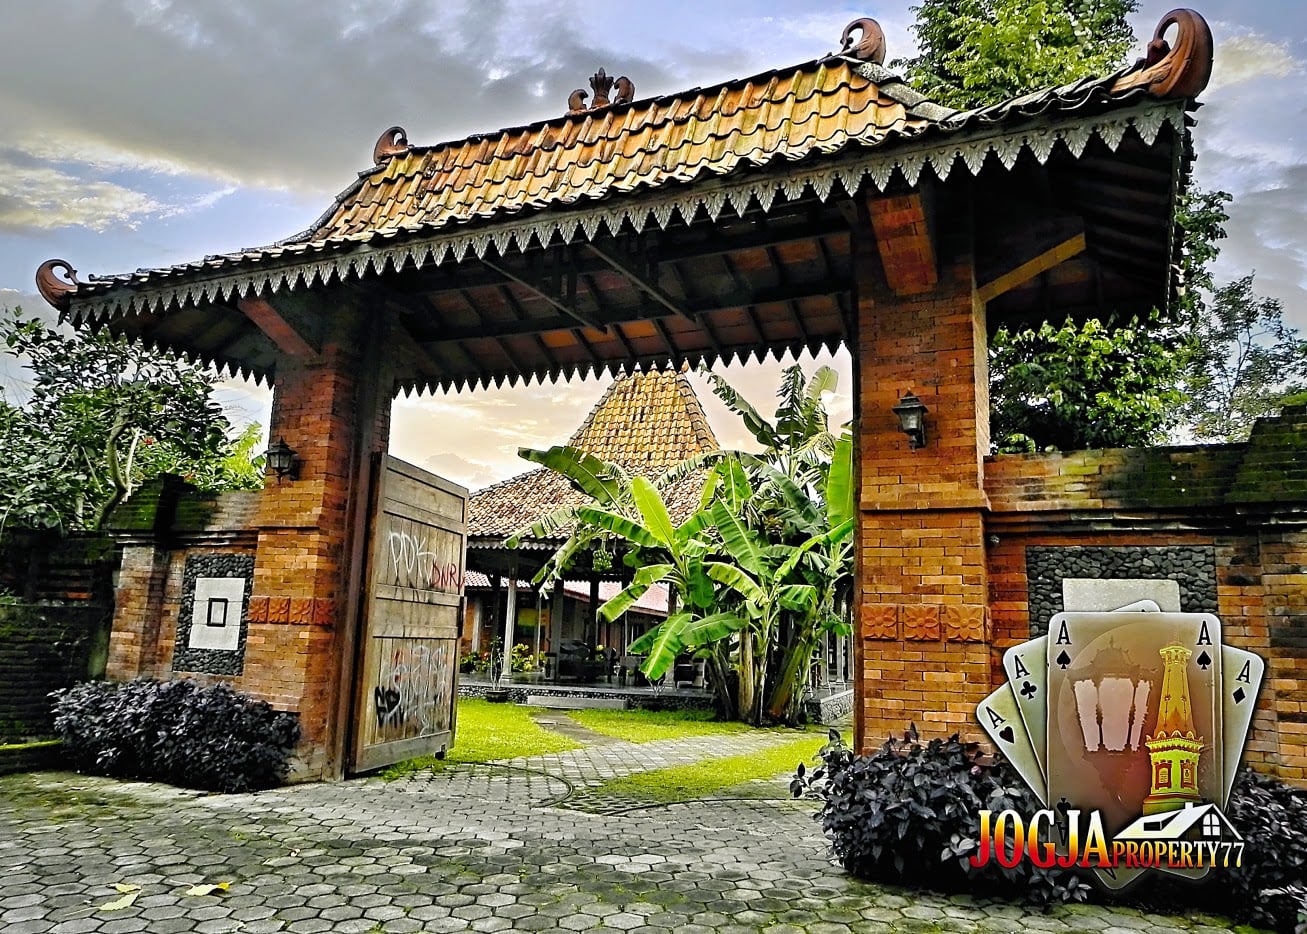 Menakjubkan 21 Gambar Rumah Joglo Yogyakarta 15 Menciptakan Ide Desain Interior Untuk Desain Rumah dengan 21 Gambar Rumah Joglo Yogyakarta